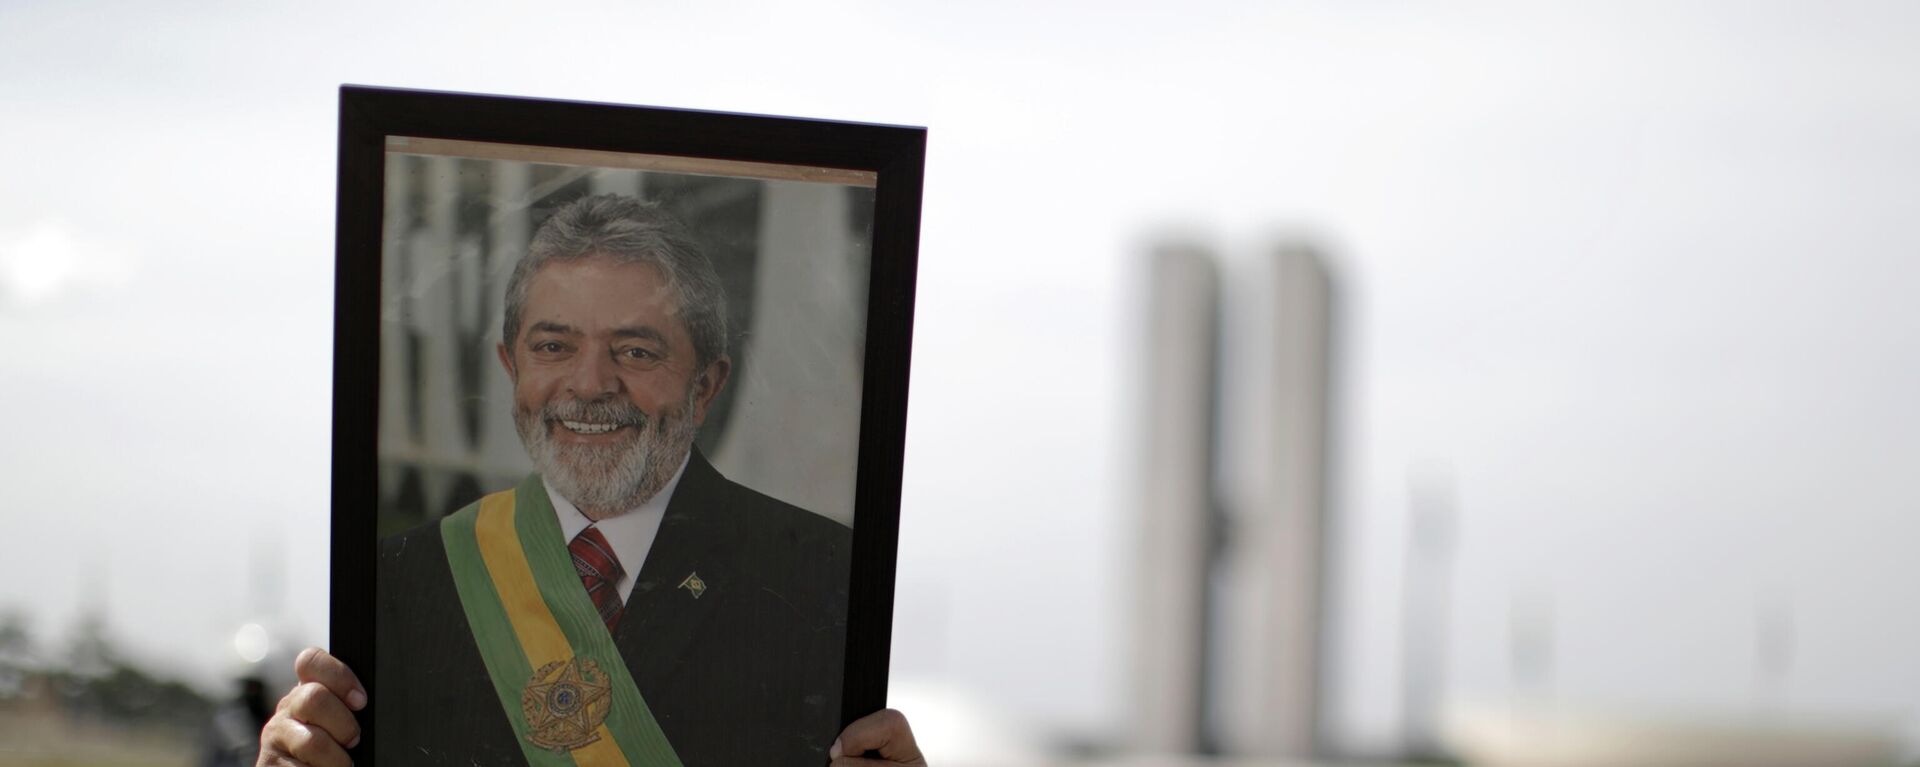 Un manofestante con el retrato del expresidente de Brasil Luiz Inácio Lula da Silva - Sputnik Mundo, 1920, 21.06.2021